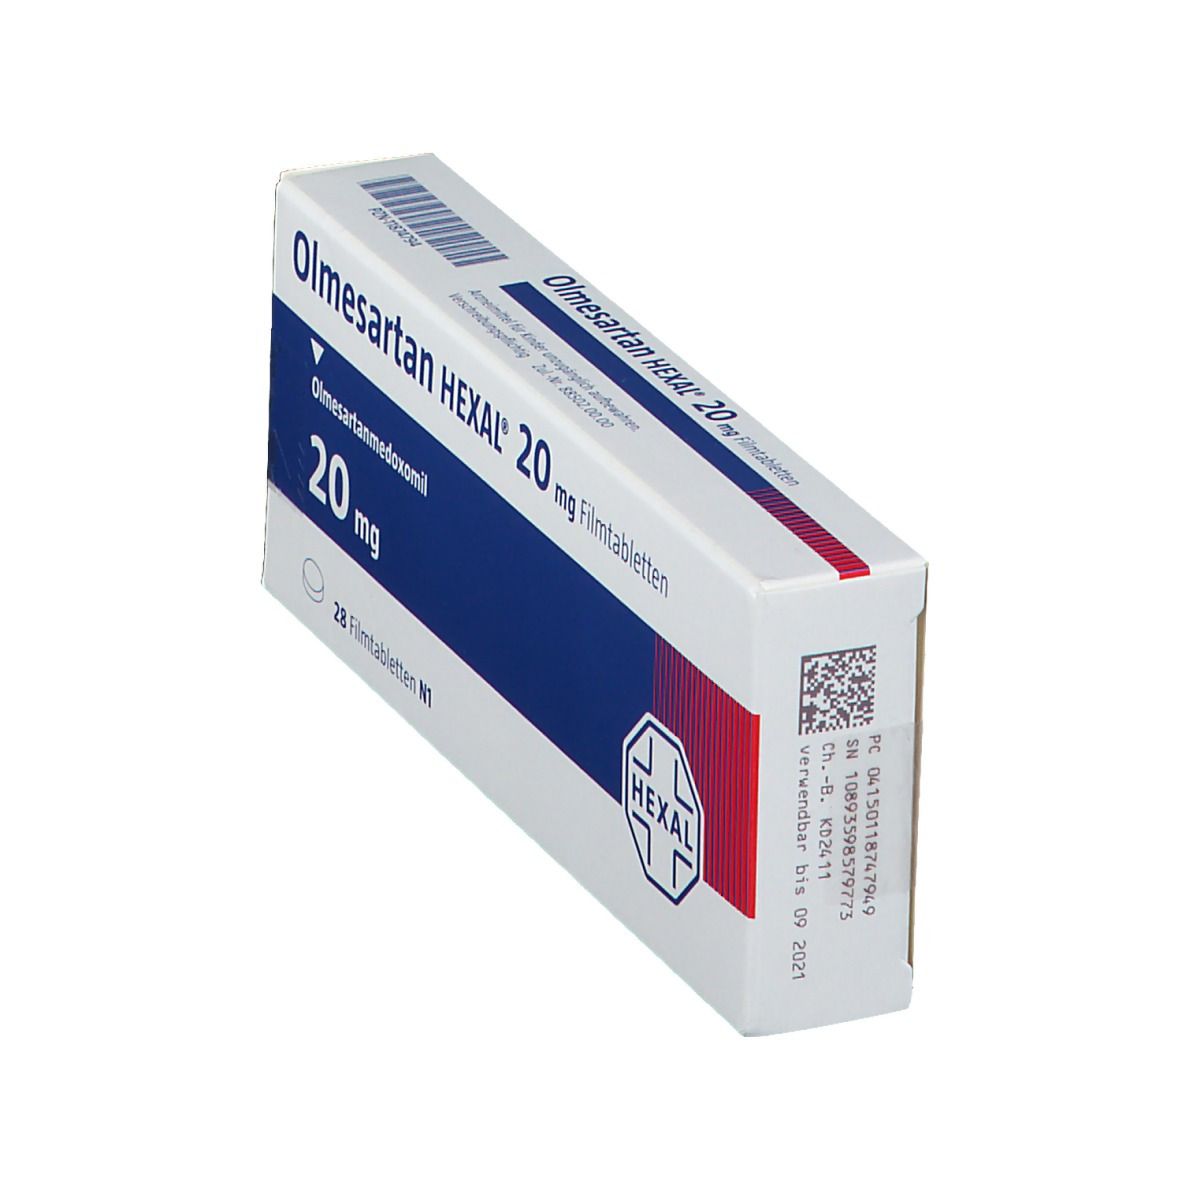 Olmesartan HEXAL® 20 mg